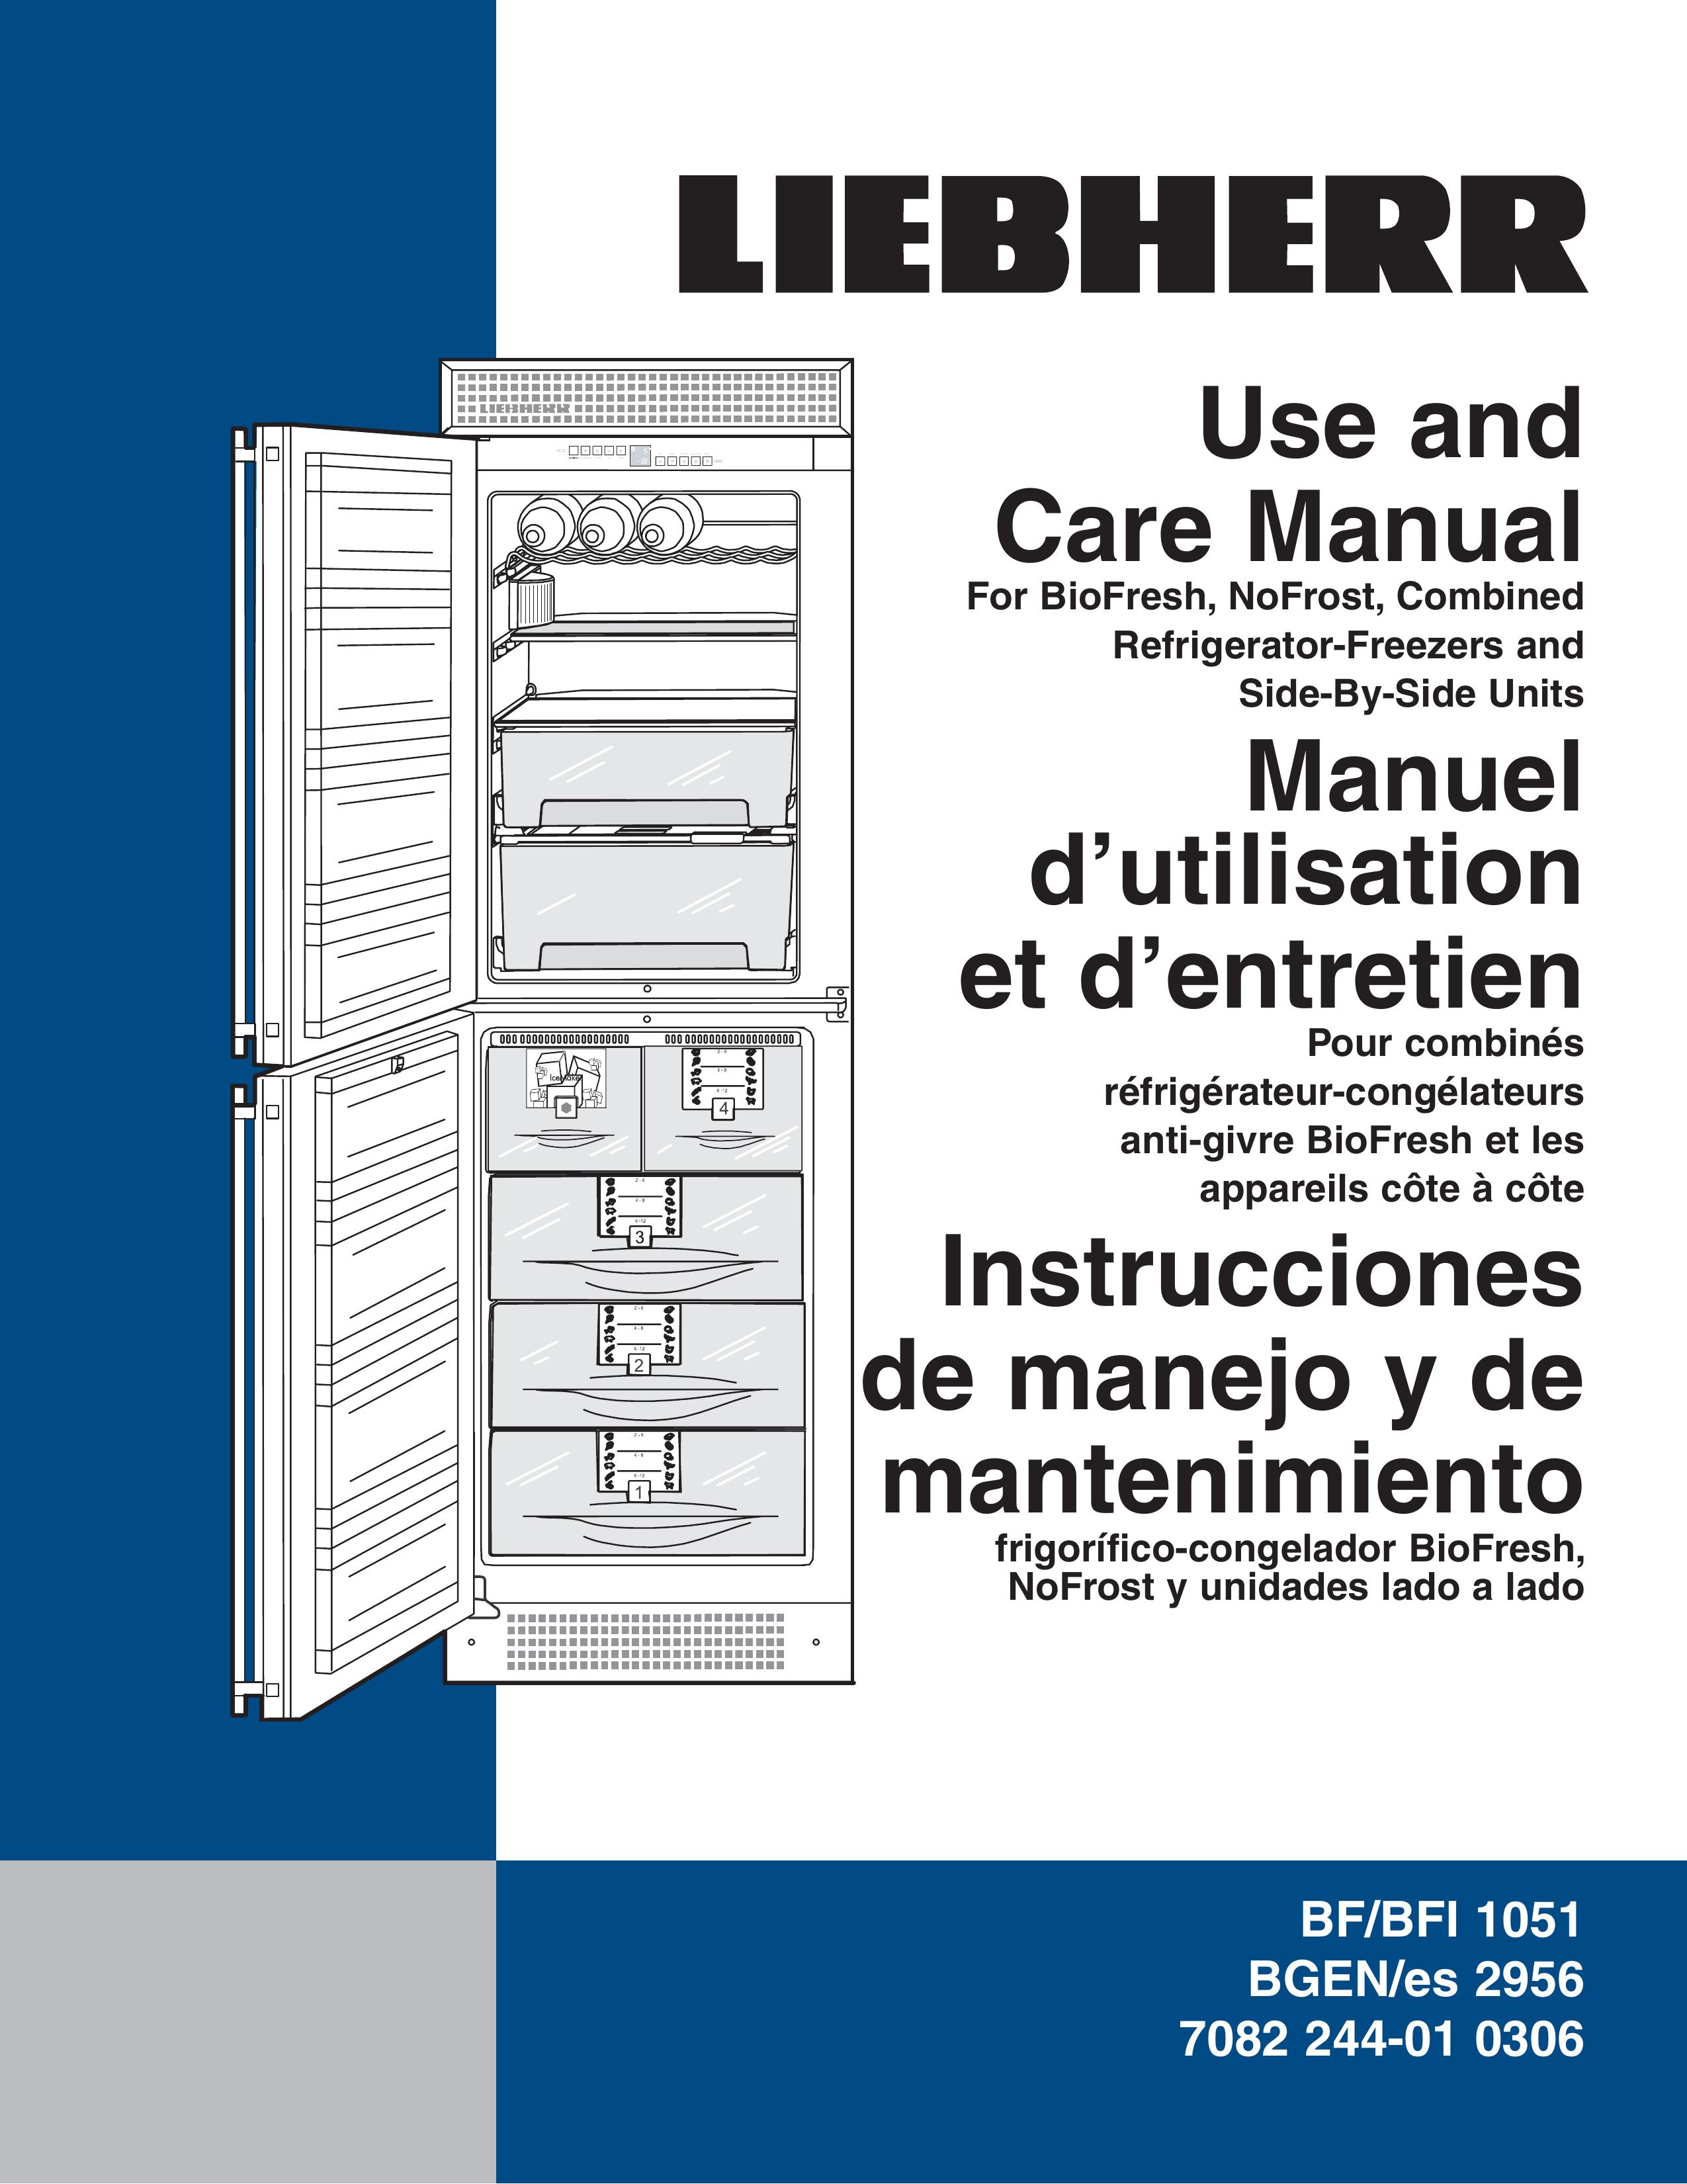 Liebherr BGEN/es 2956 Refrigerator User Manual